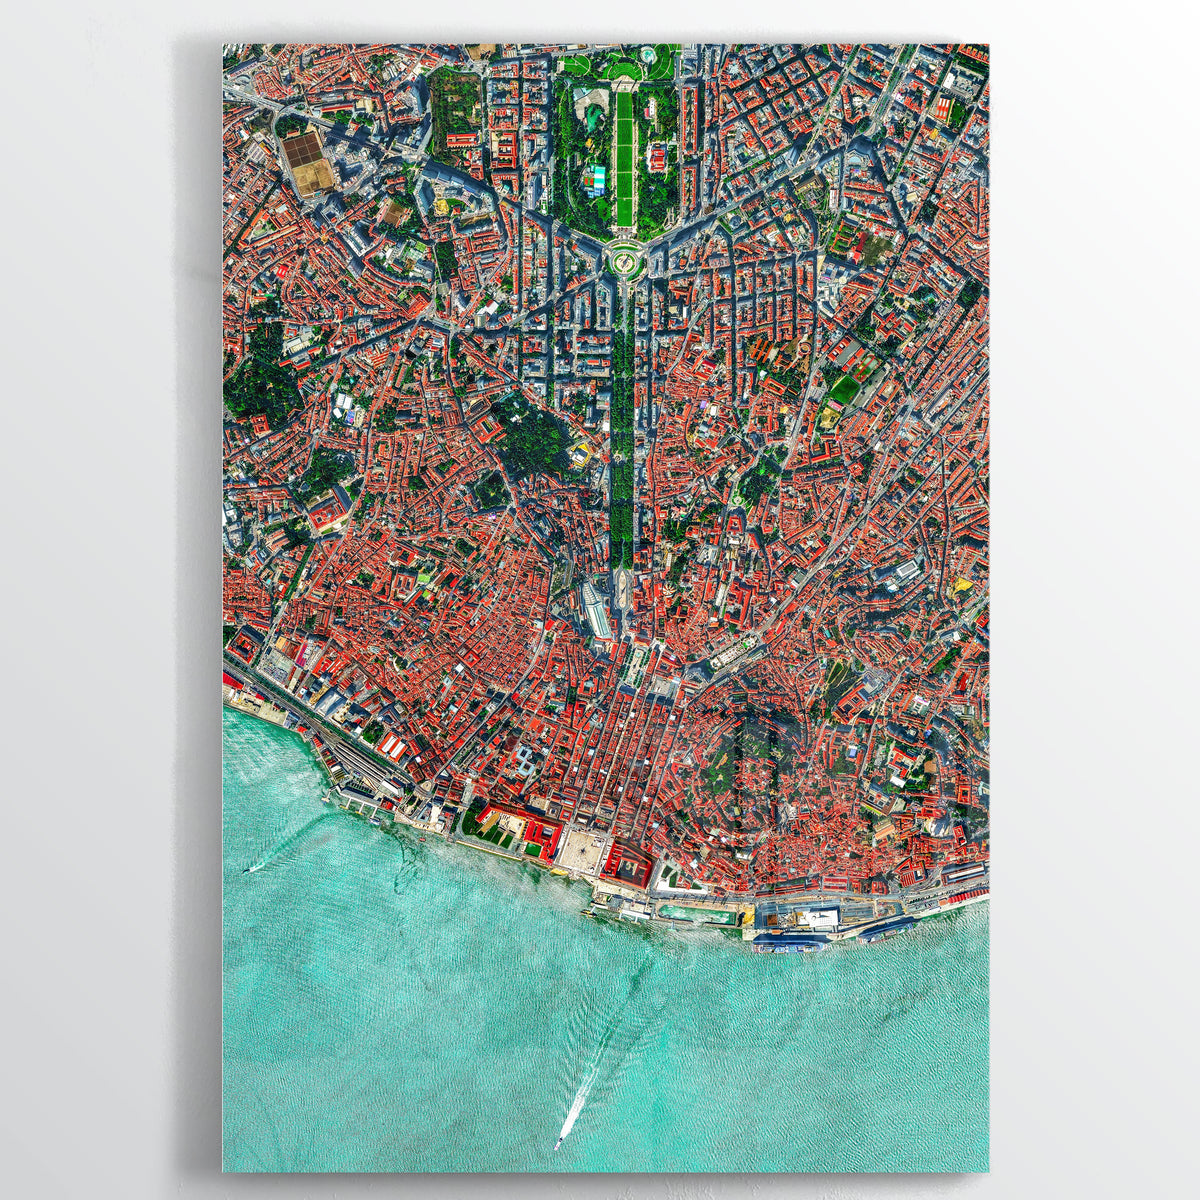 Lisbon - Fine Art